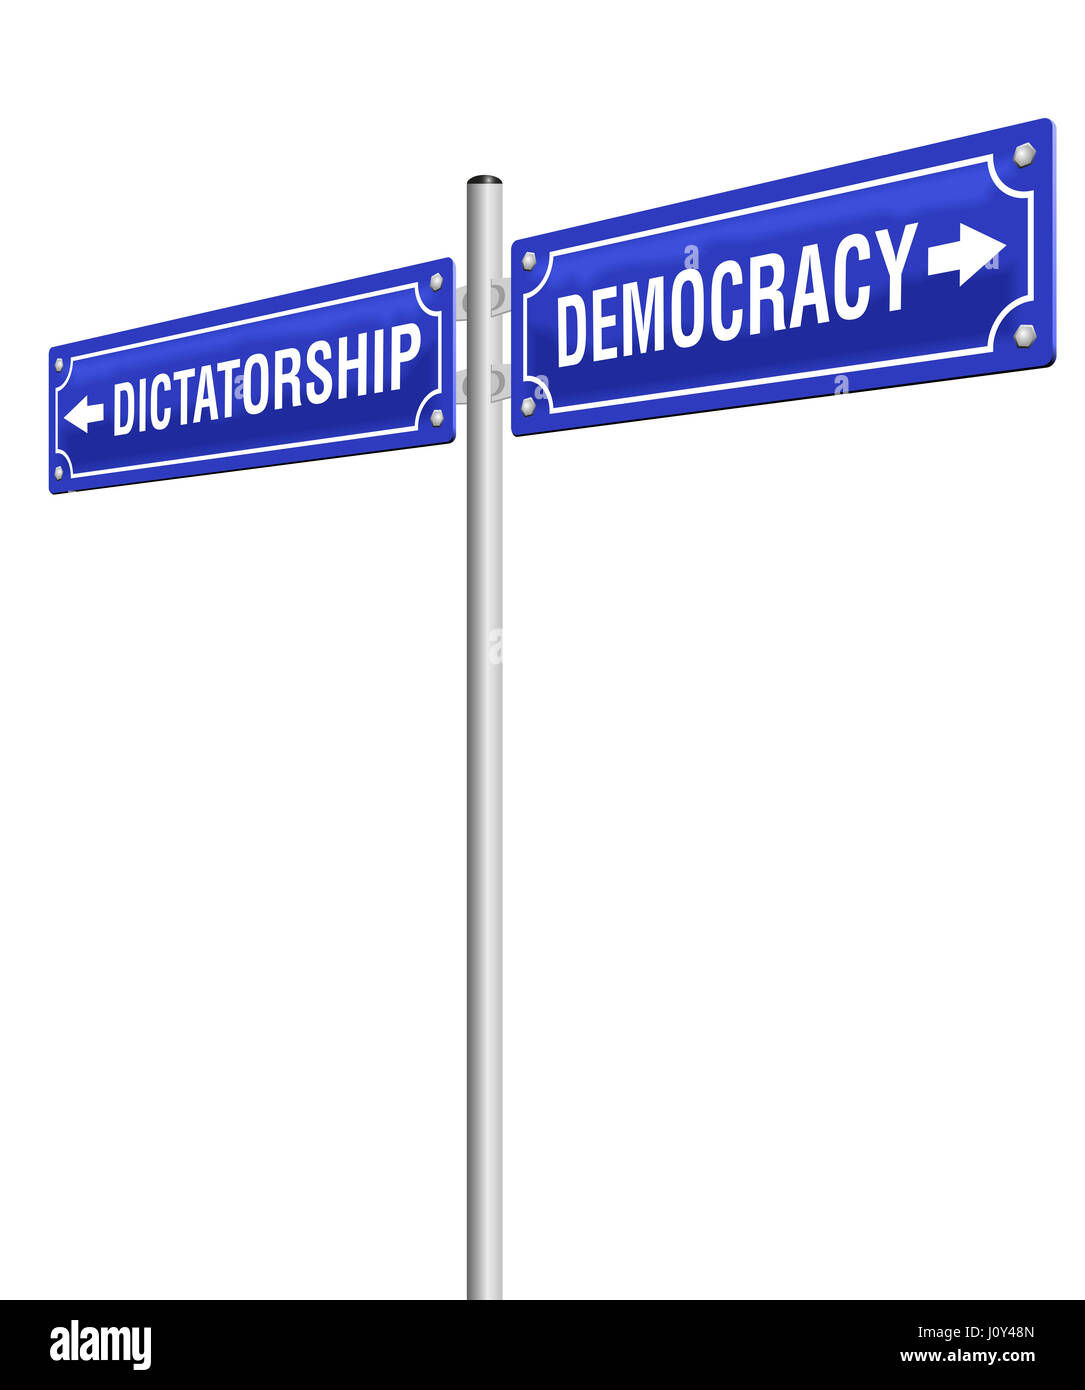 La dictature et la démocratie, écrit sur deux indicateurs dans des directions opposées. Illustration isolé sur fond blanc. Banque D'Images